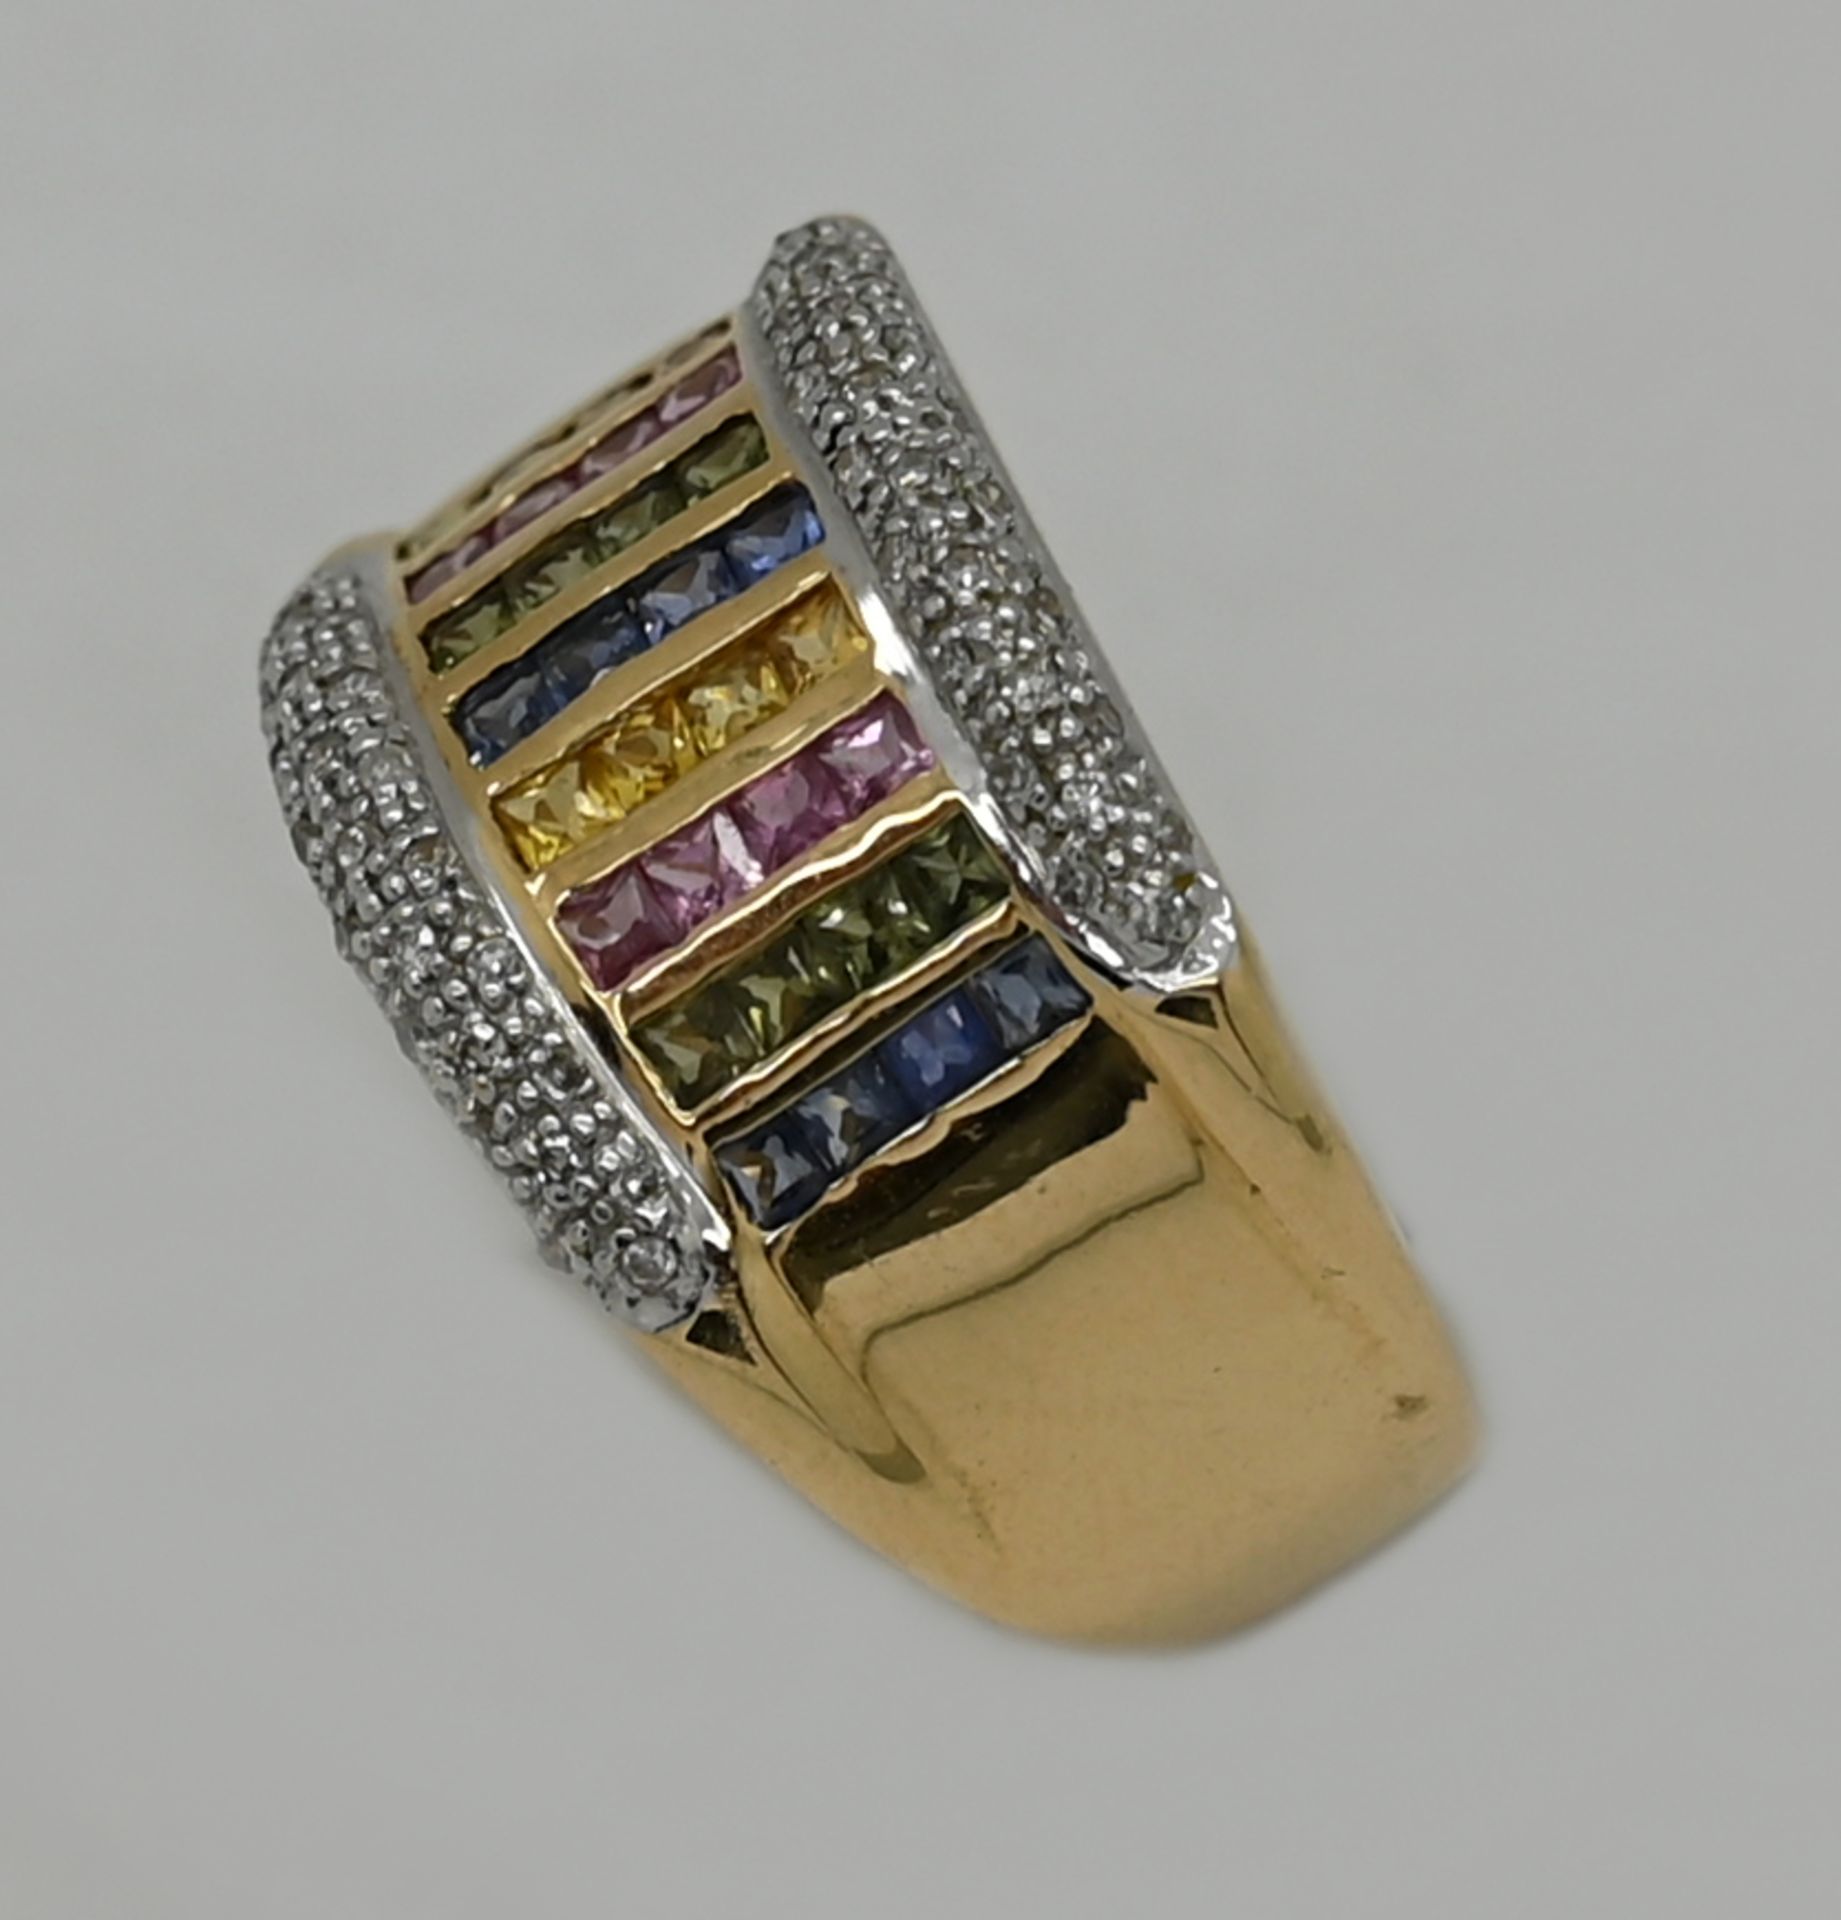 1 Damenring GG 14ct. mit multicolor Edelsteinen sowie Diamanten, Ringgröße ca. 66, min. Tsp. - Image 2 of 2